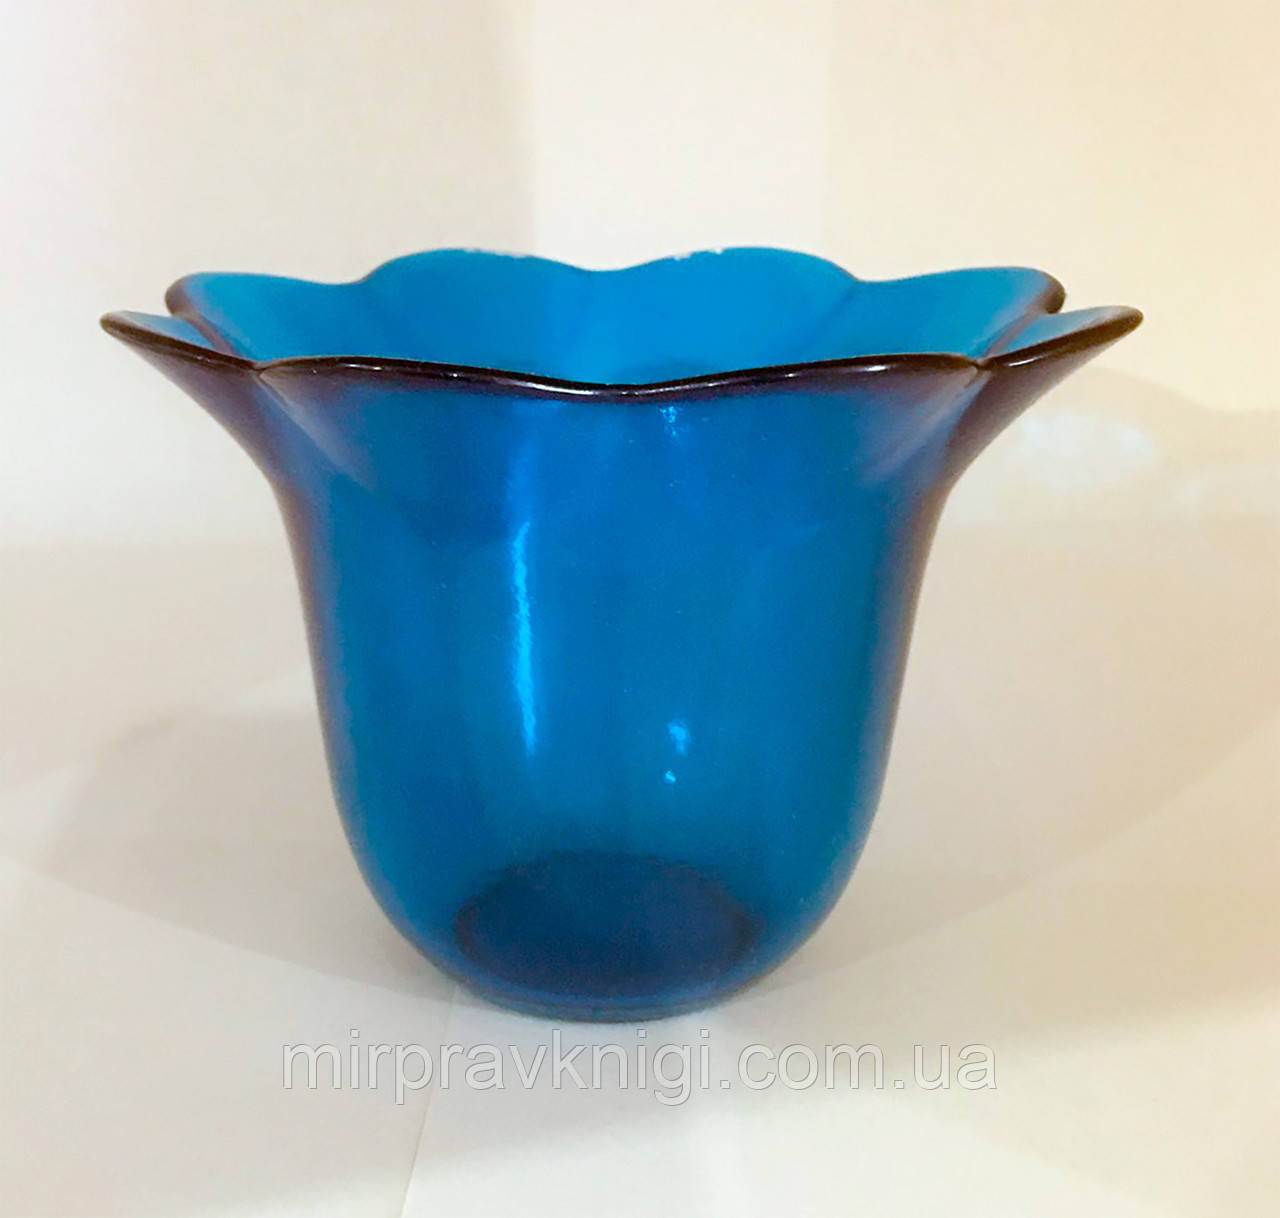 Склянка СОФРІНО для лампад синій без конуса, об'єм 200 мл. Скло, забарвлення, гладкий. № 4 гв.